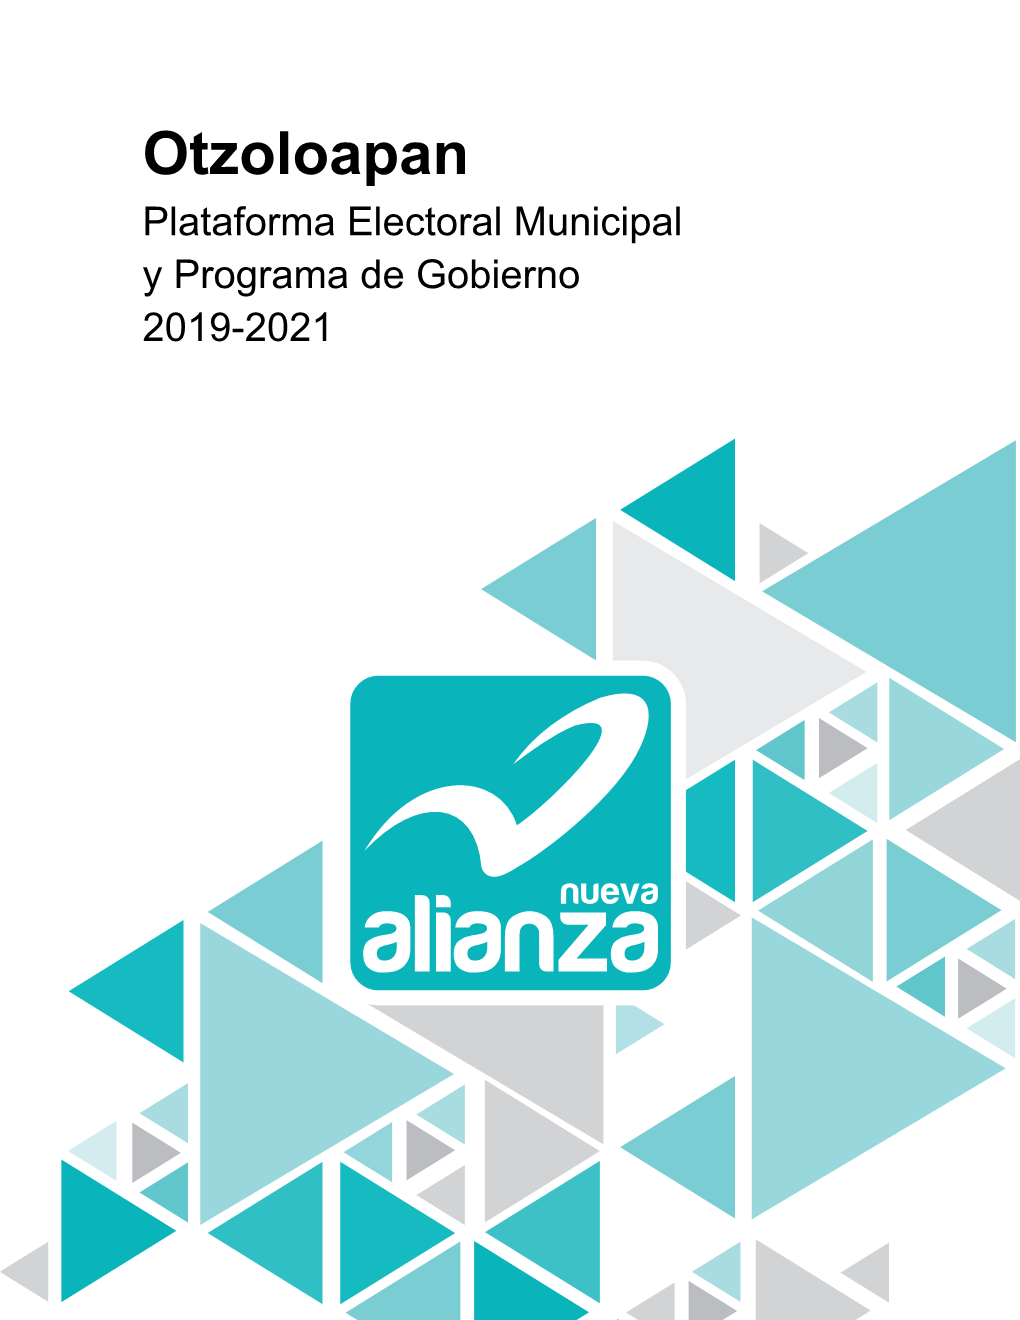 Otzoloapan Plataforma Electoral Municipal Y Programa De Gobierno 2019-2021